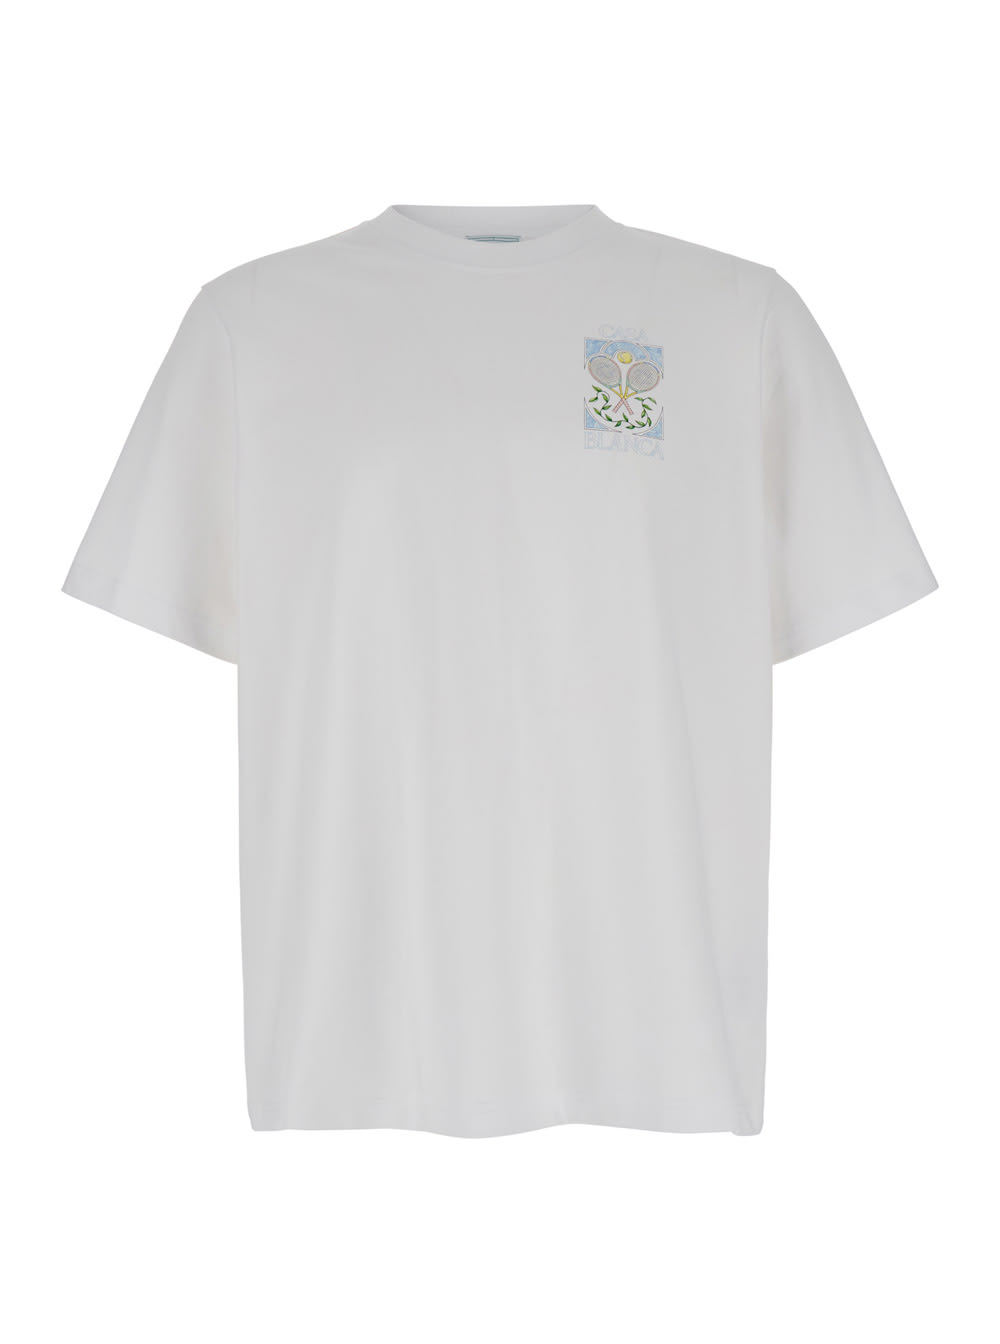 Tennis Pastelle Printed T-shirt